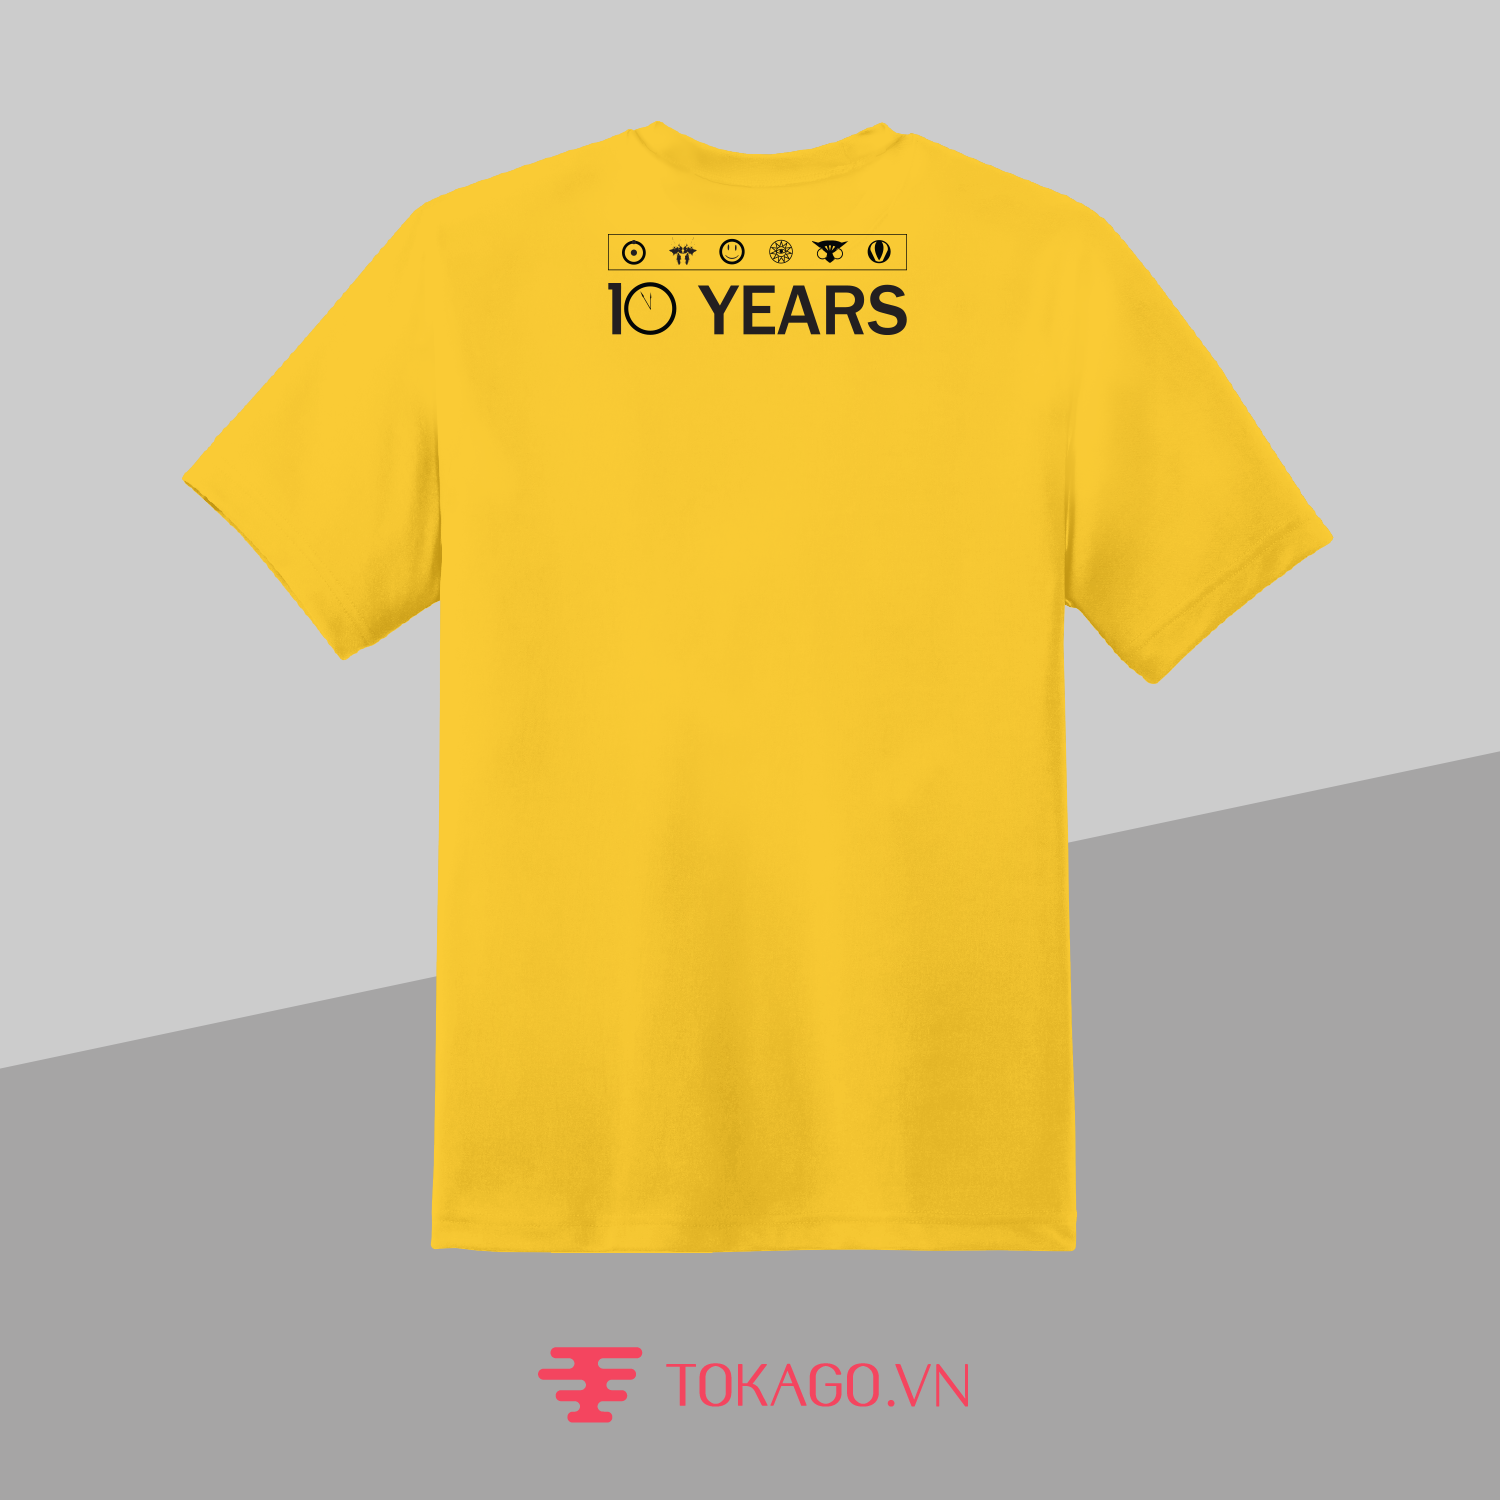 T-shirt Watchmen kỷ niệm 10 năm